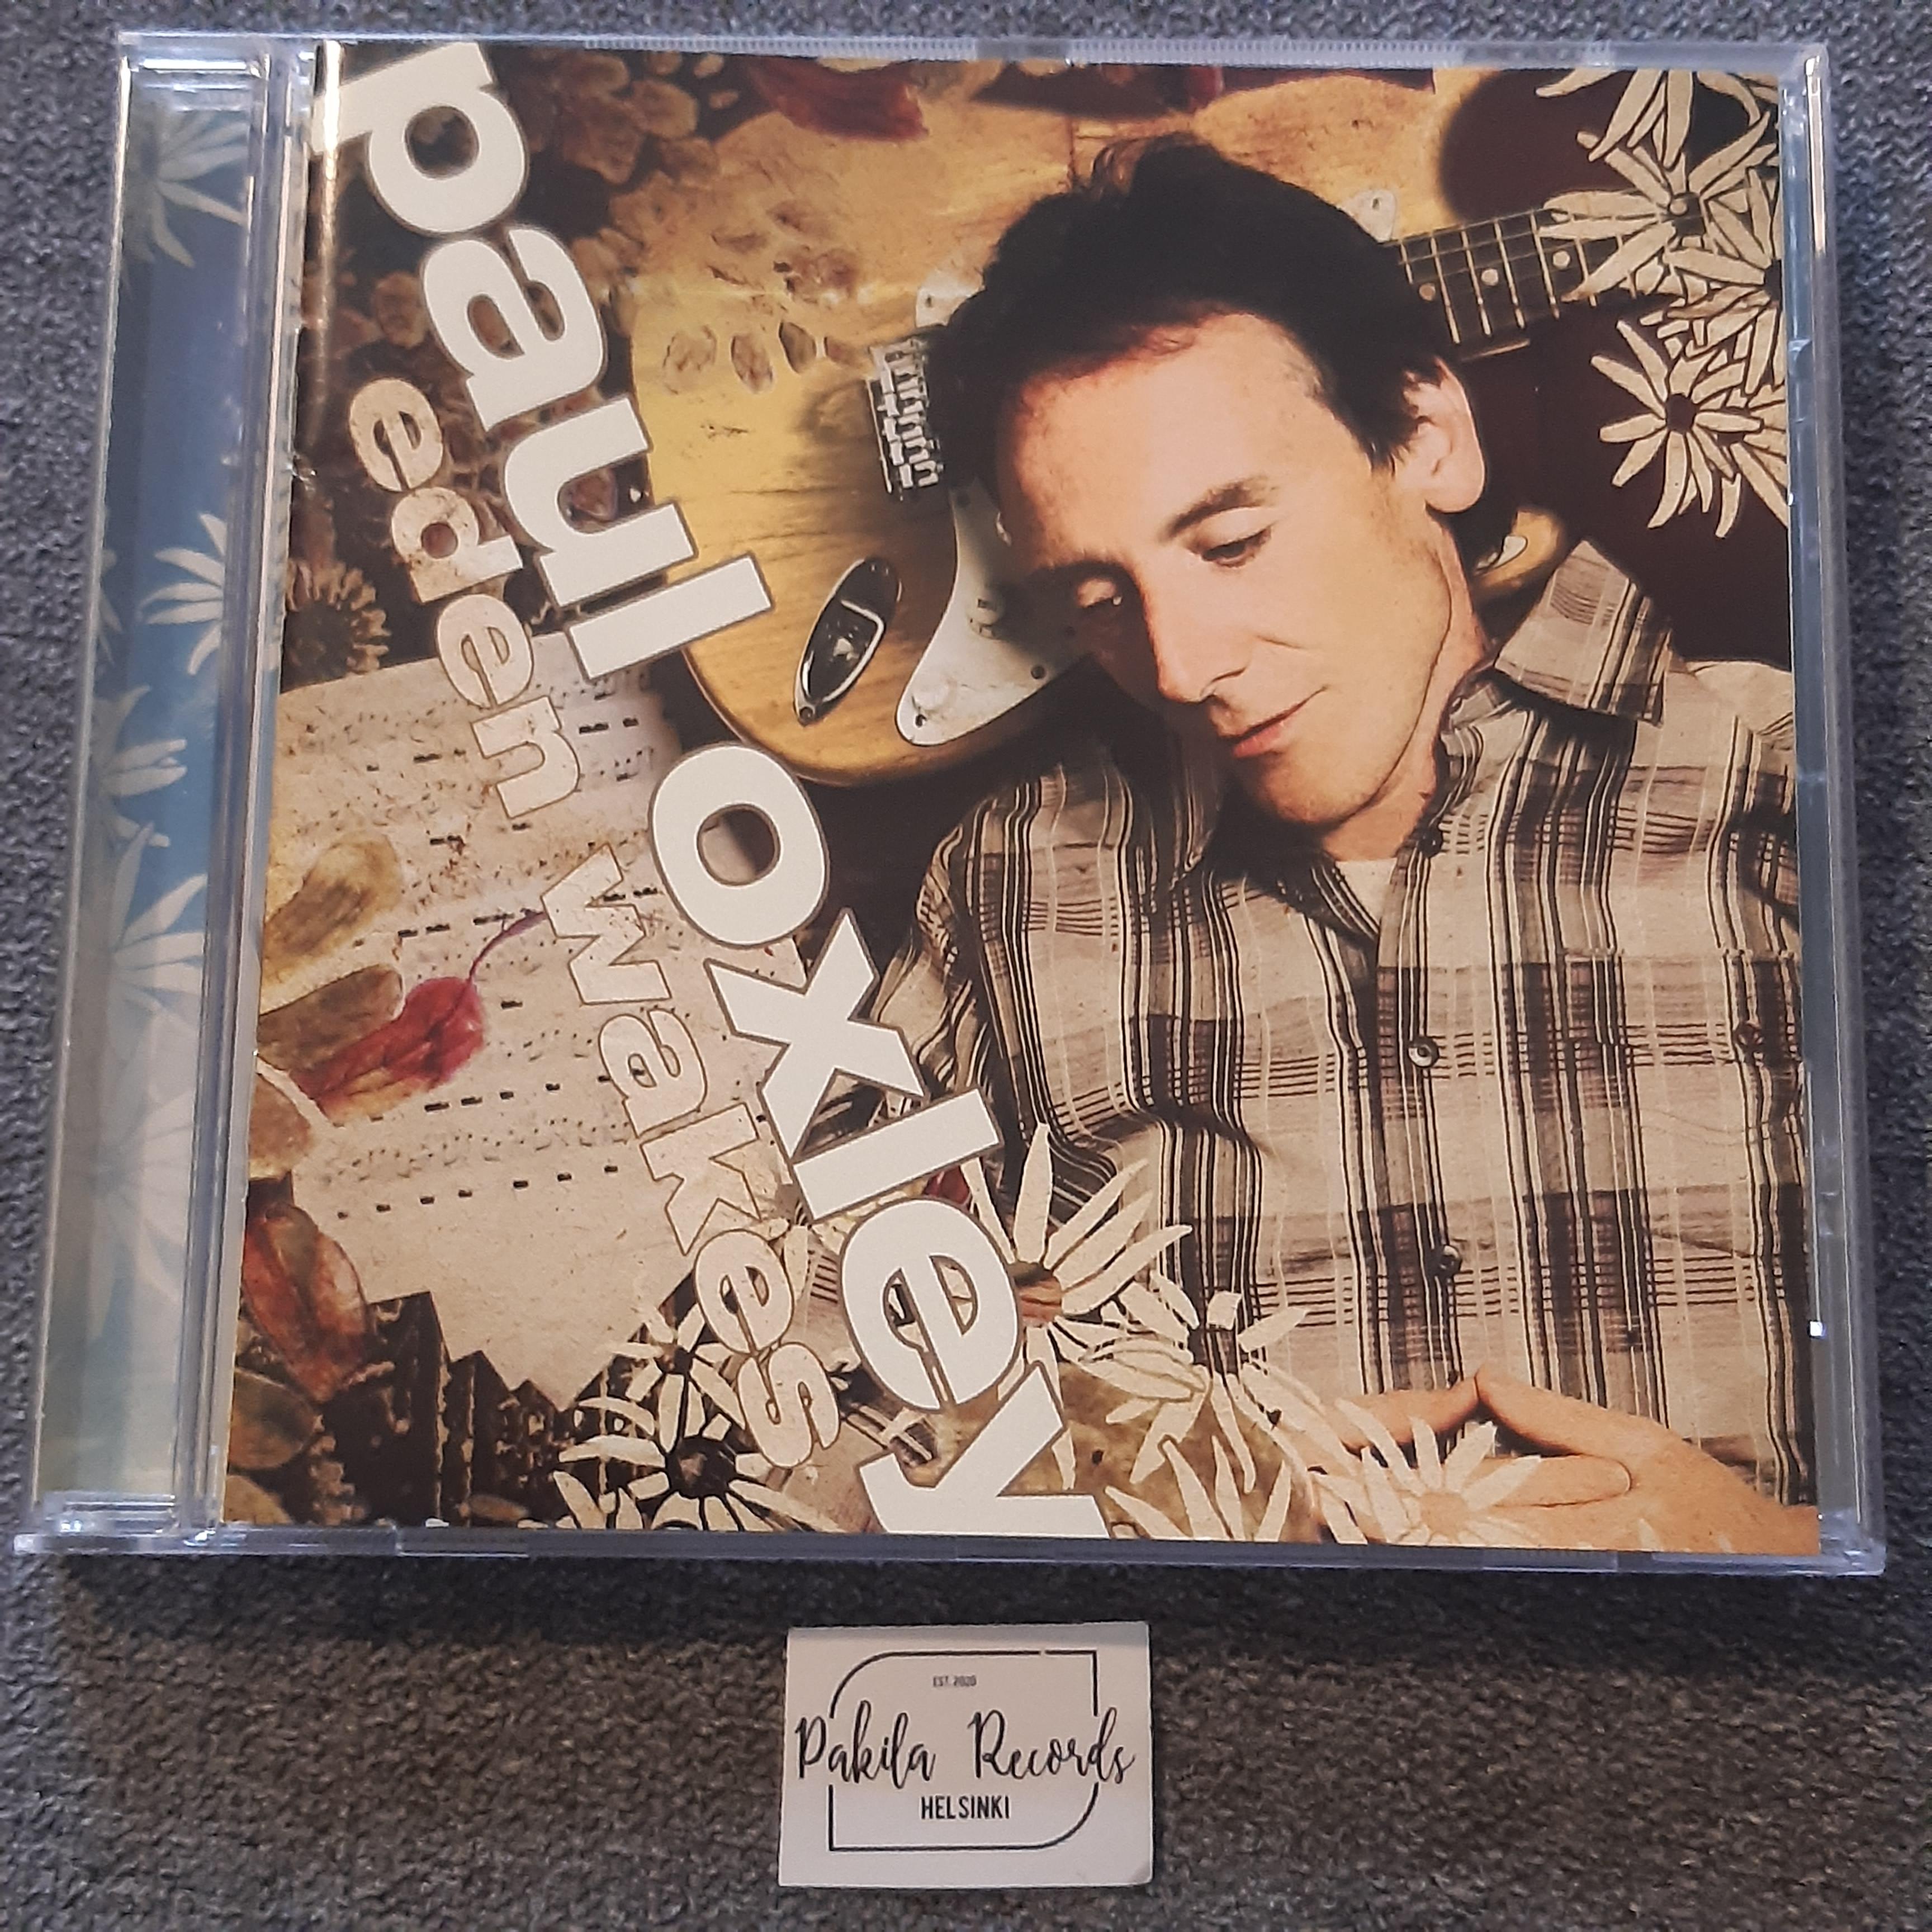 Paul Oxley - Eden Wakes - CD (käytetty)